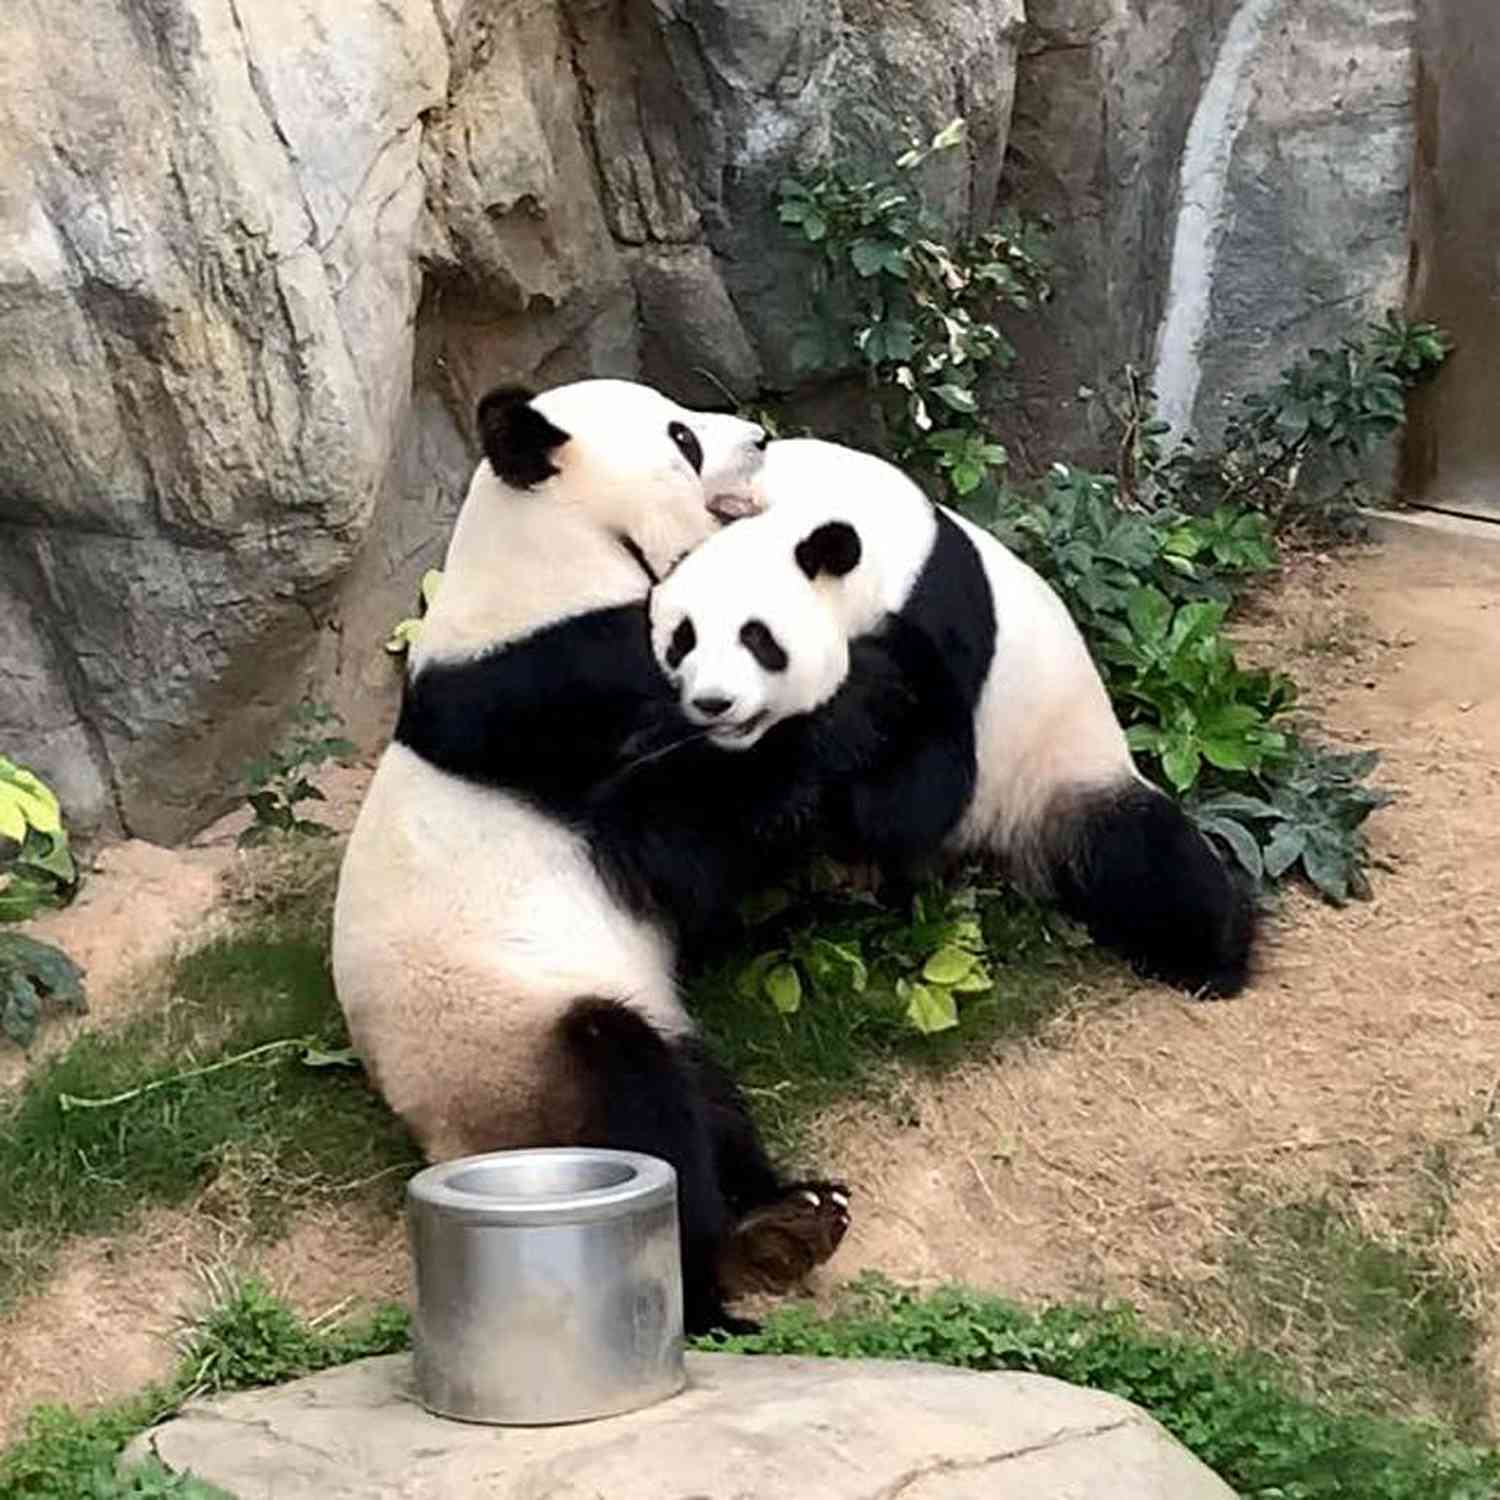 Pandas - After 10 Years of Trying - Finally Mate at Hong Kong Zoo